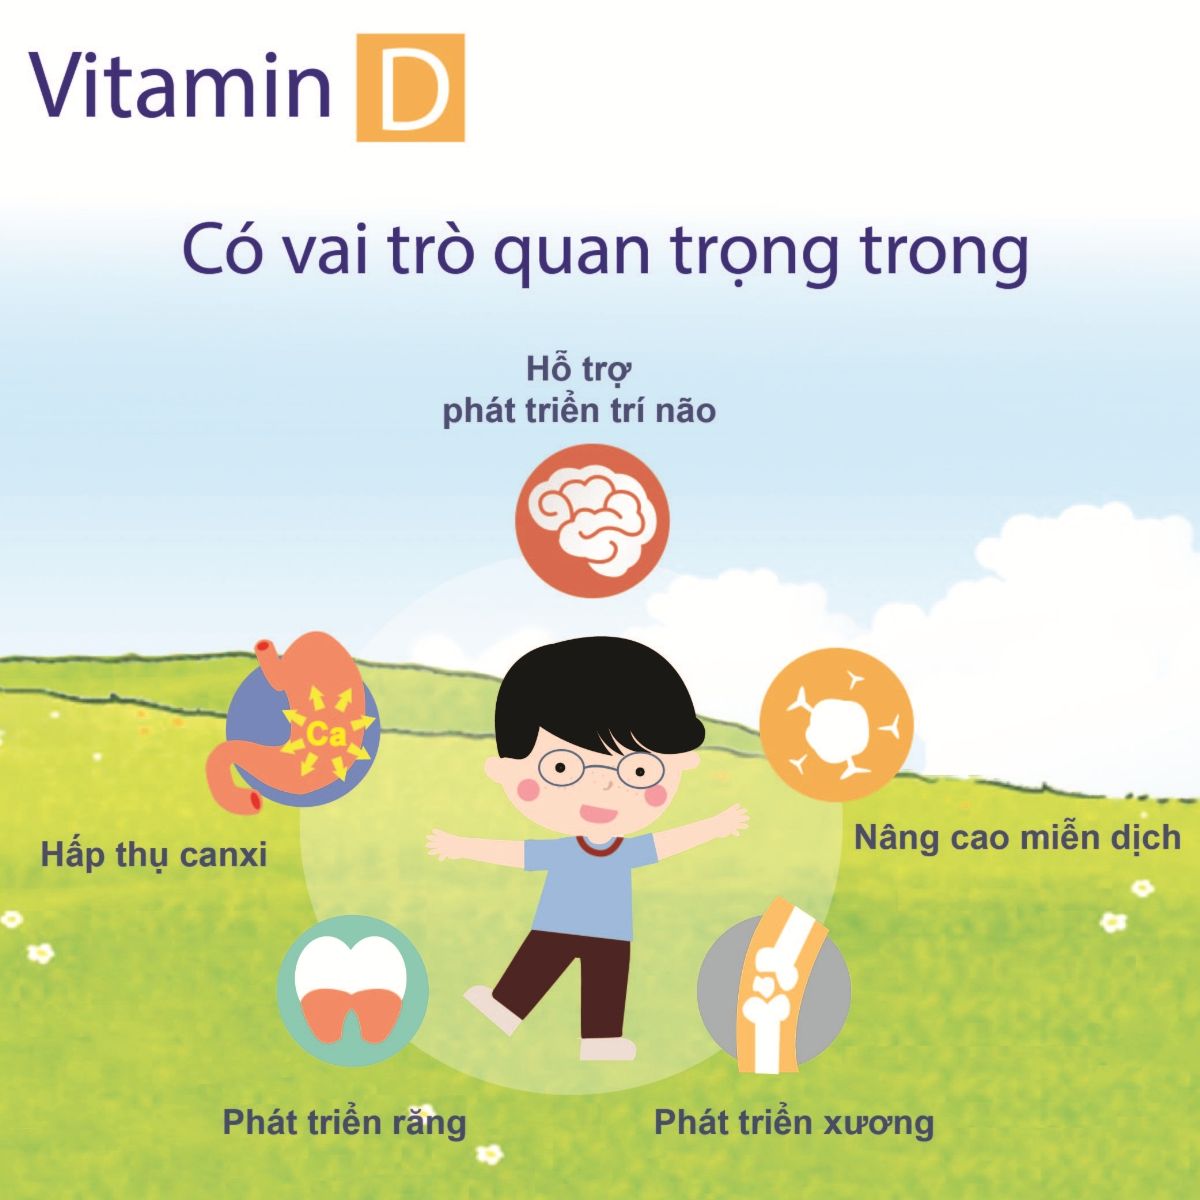 vai trò của vitamin D